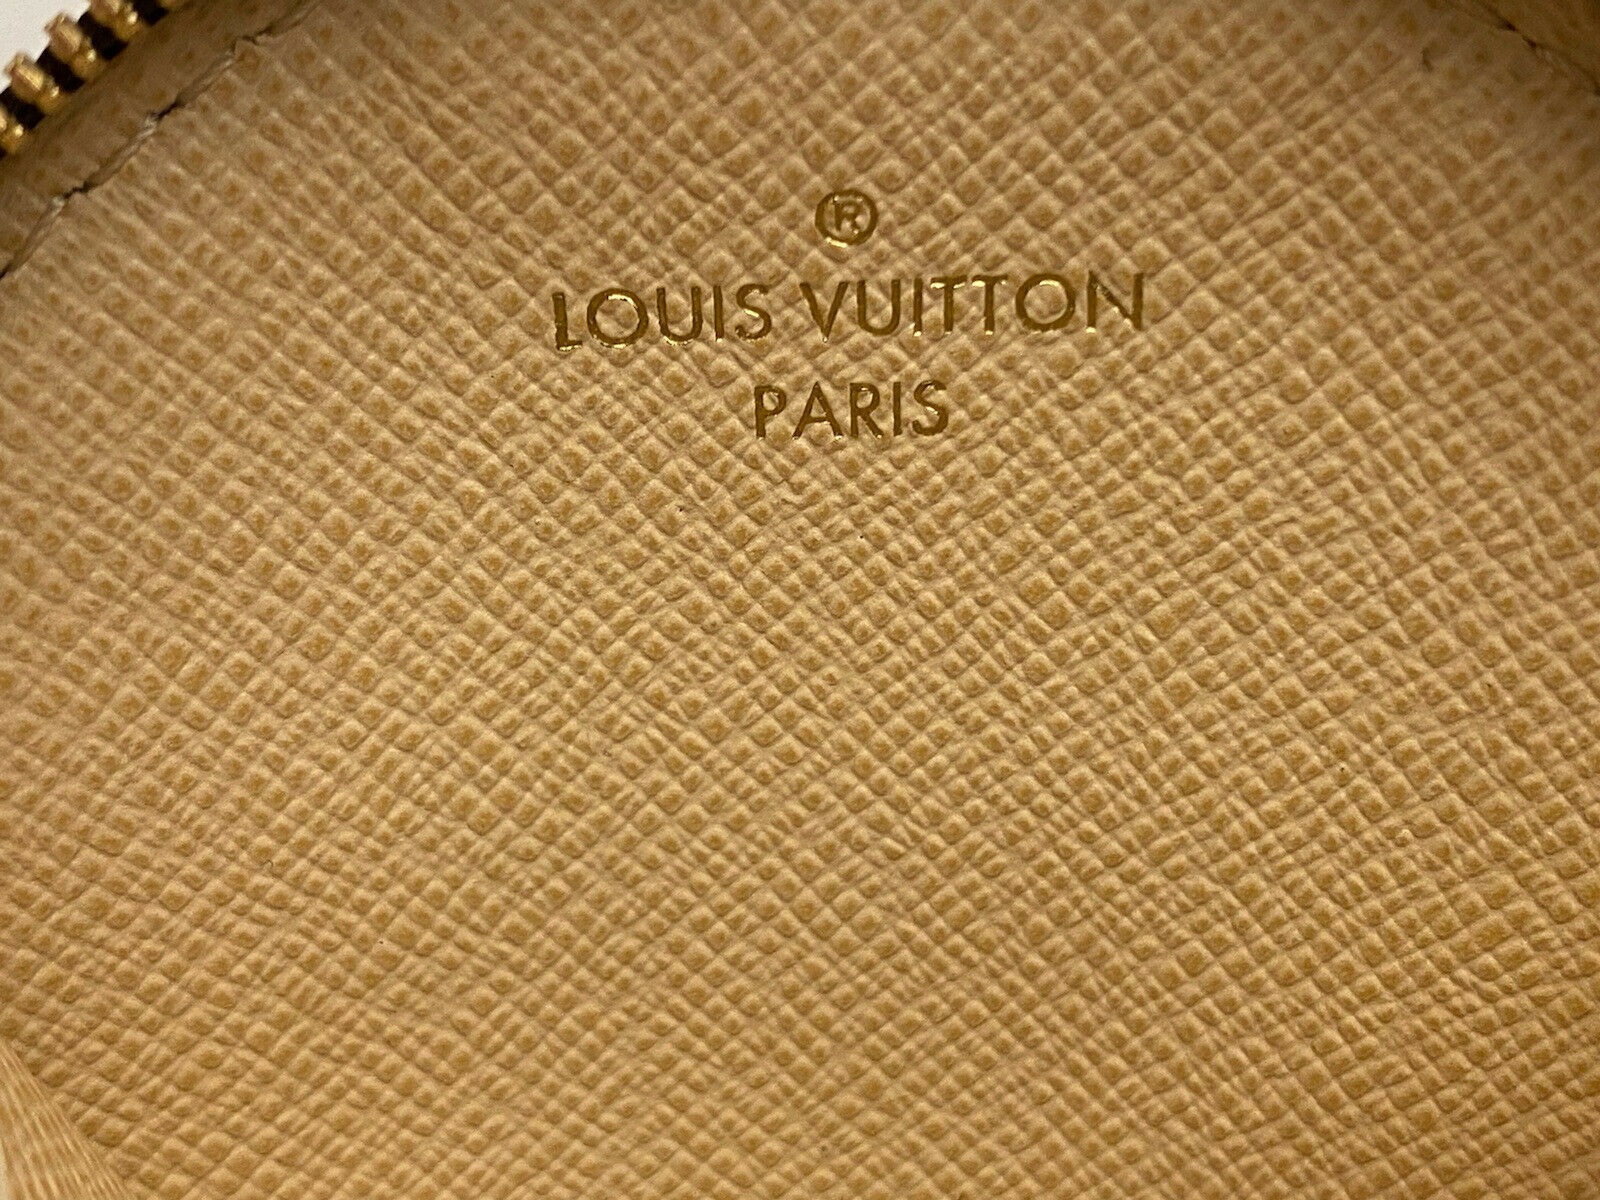 Louis Vuitton Monogram Multi-Pochette Accessories Round Coin Purse – Coco  Approved Studio